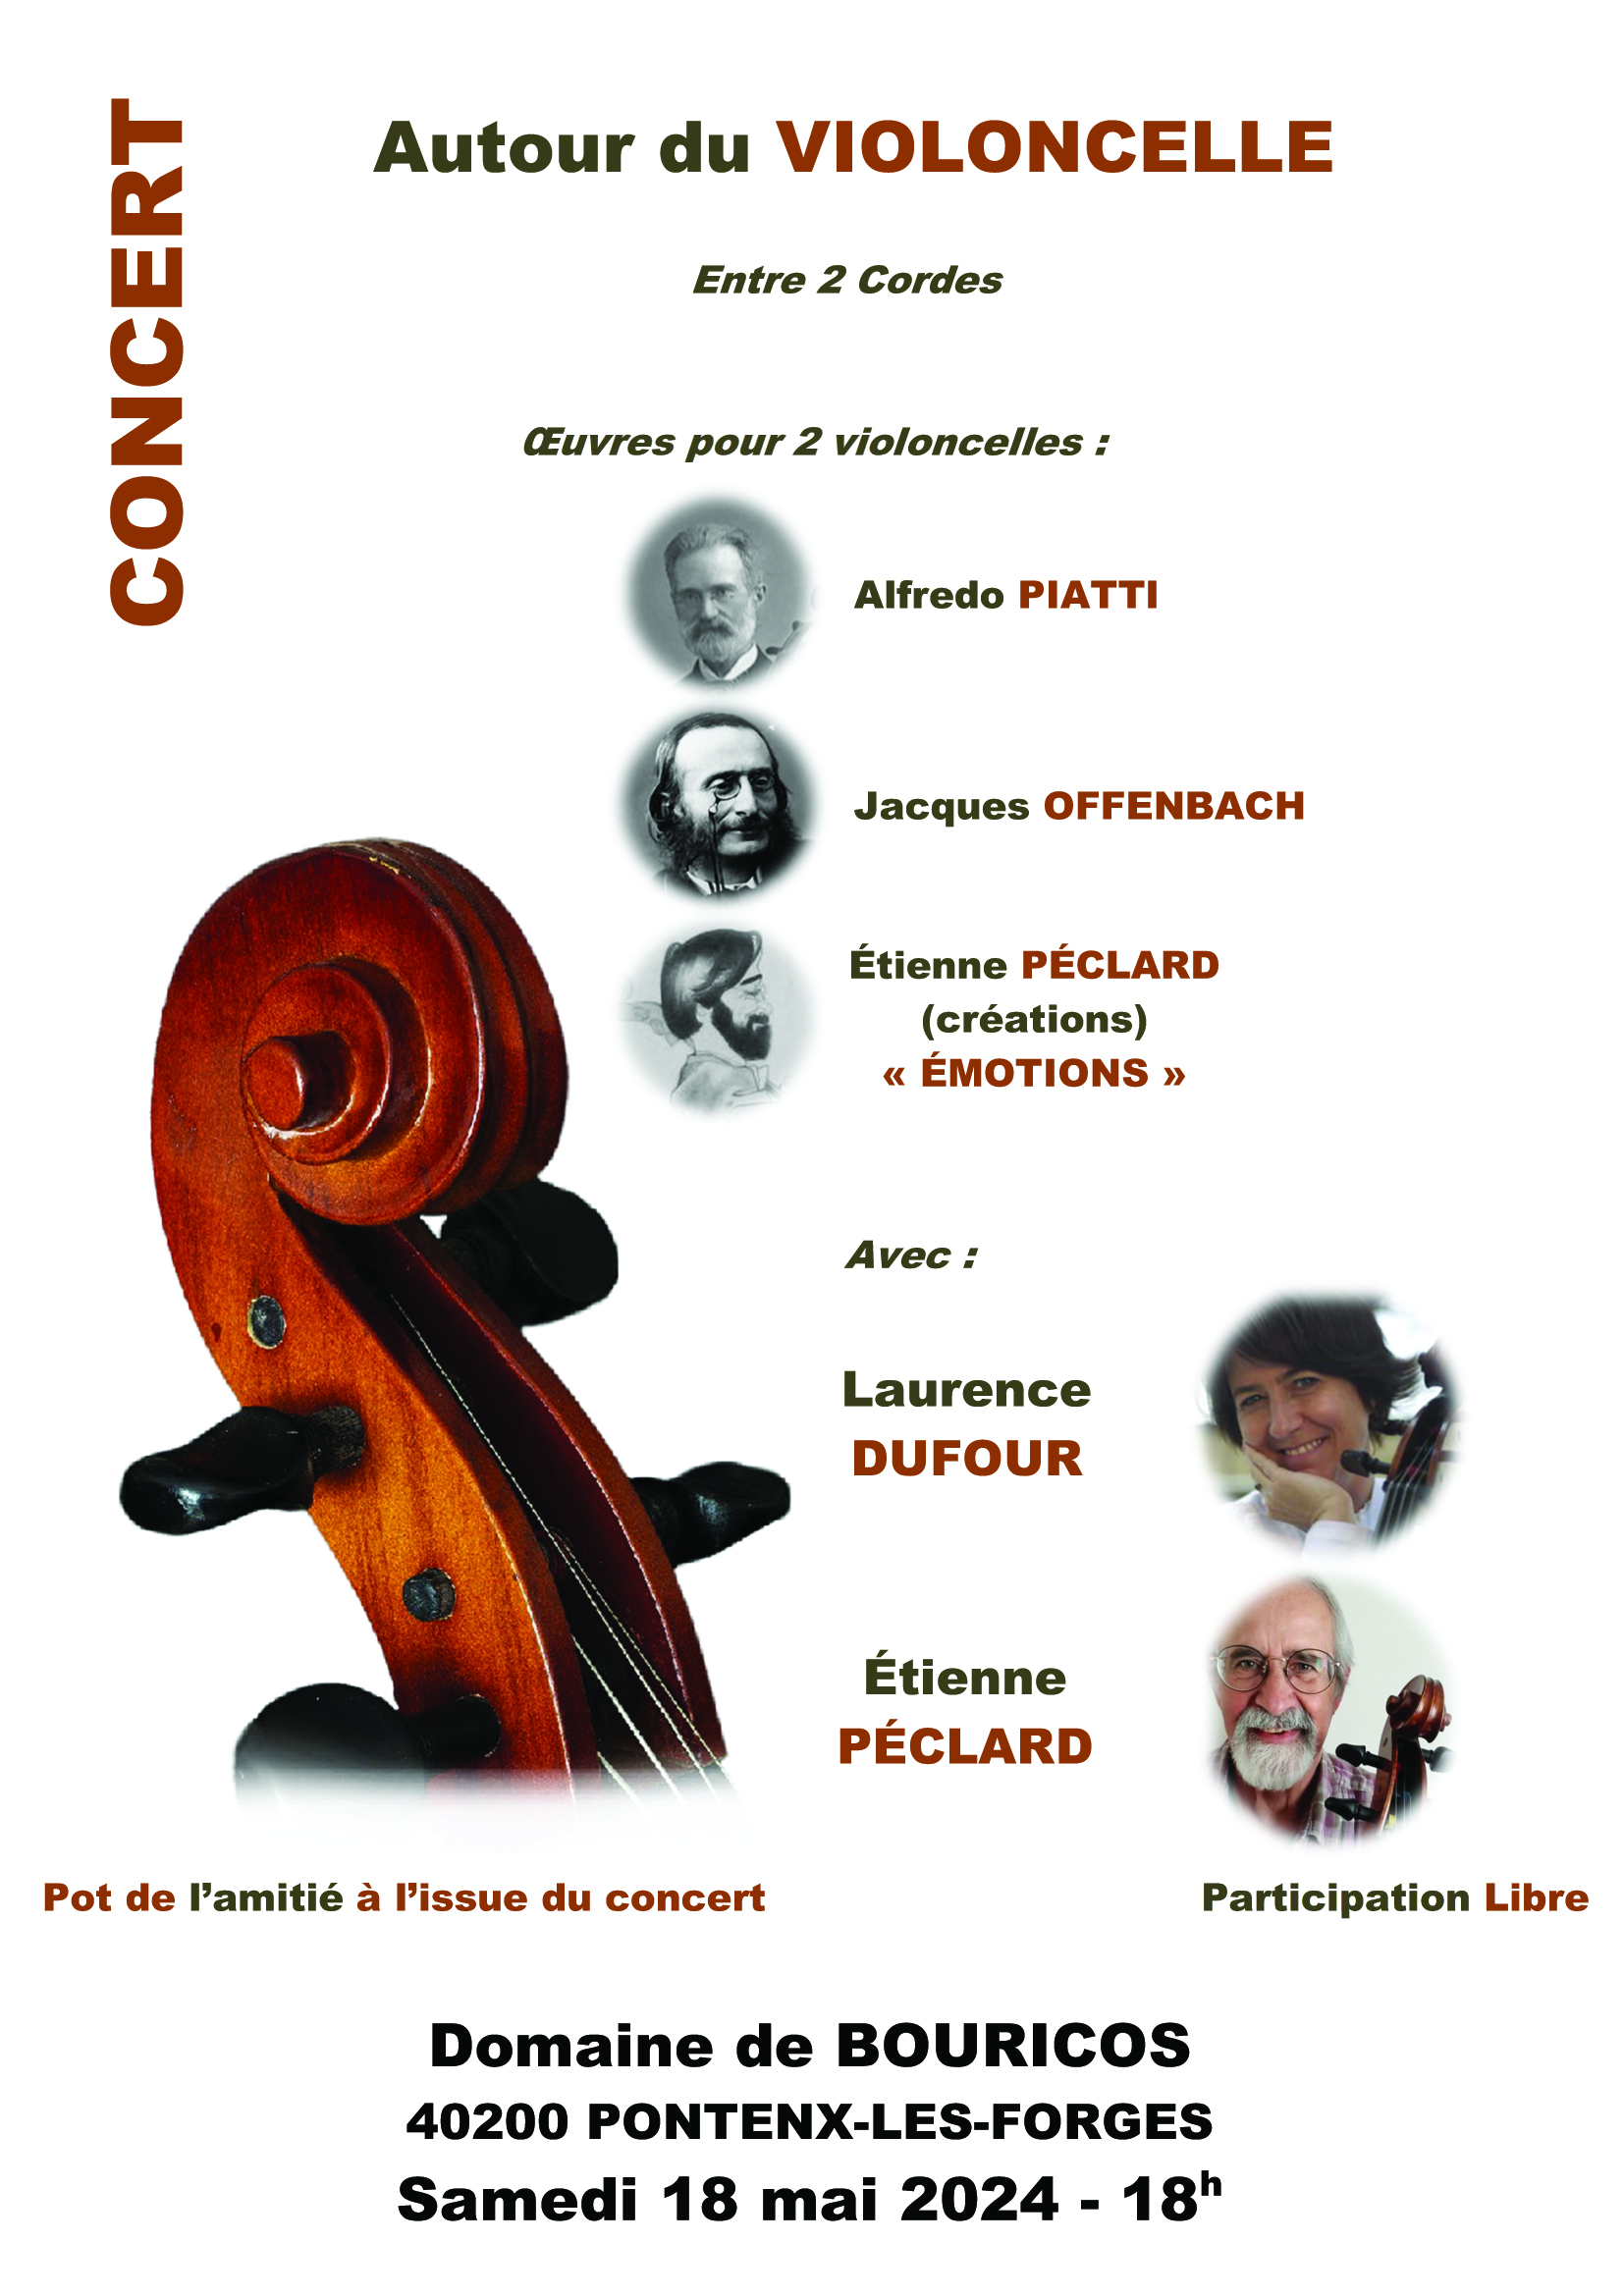 Concert Entre 2 cordes à Bouricos Pontenx-les-Forges samedi 18 mai 2024 ...